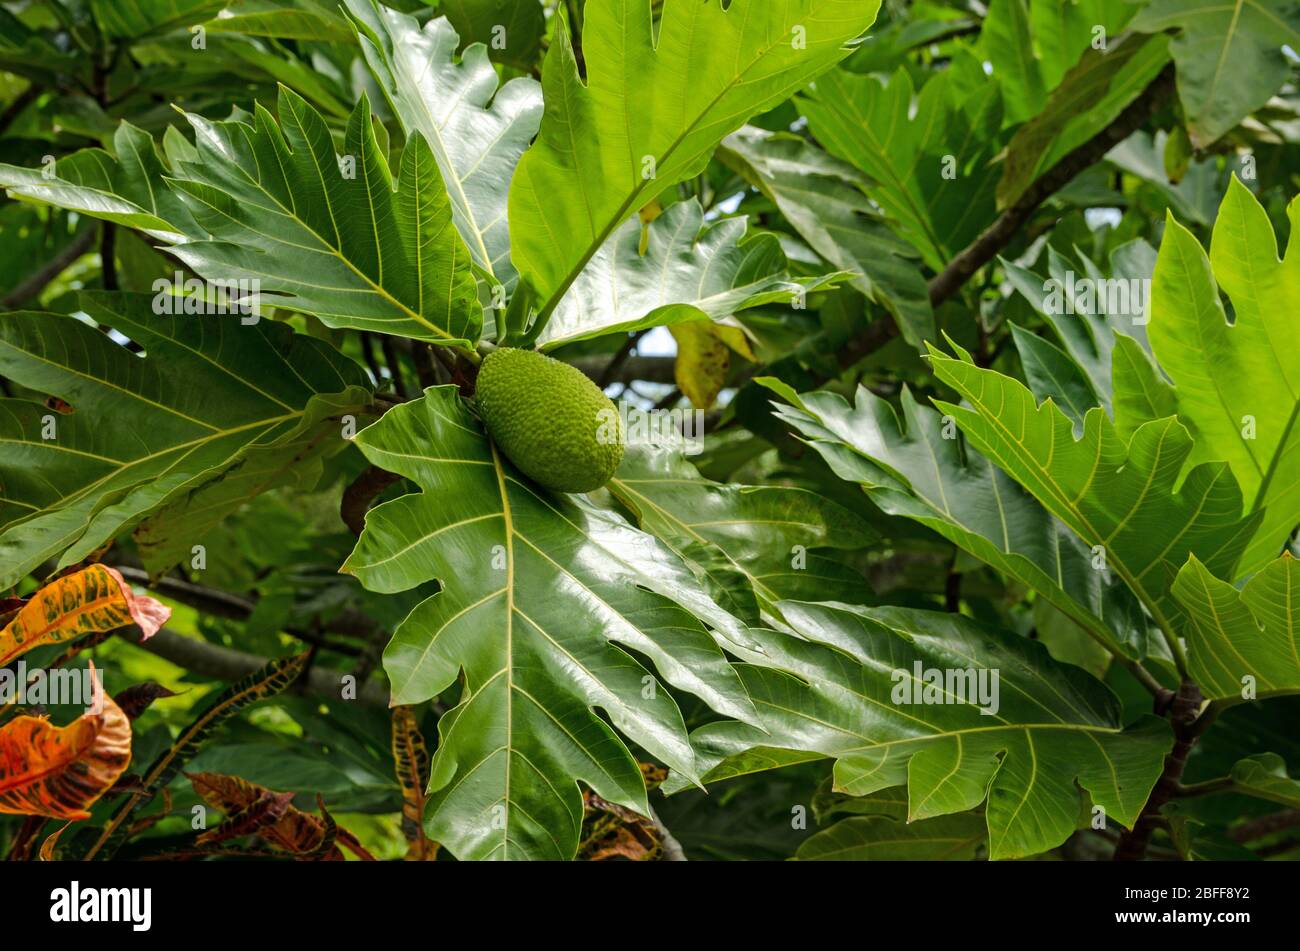 Breadfruit, latin name Artocarpus altilis, ripening on a tree in Tobago. Stock Photo